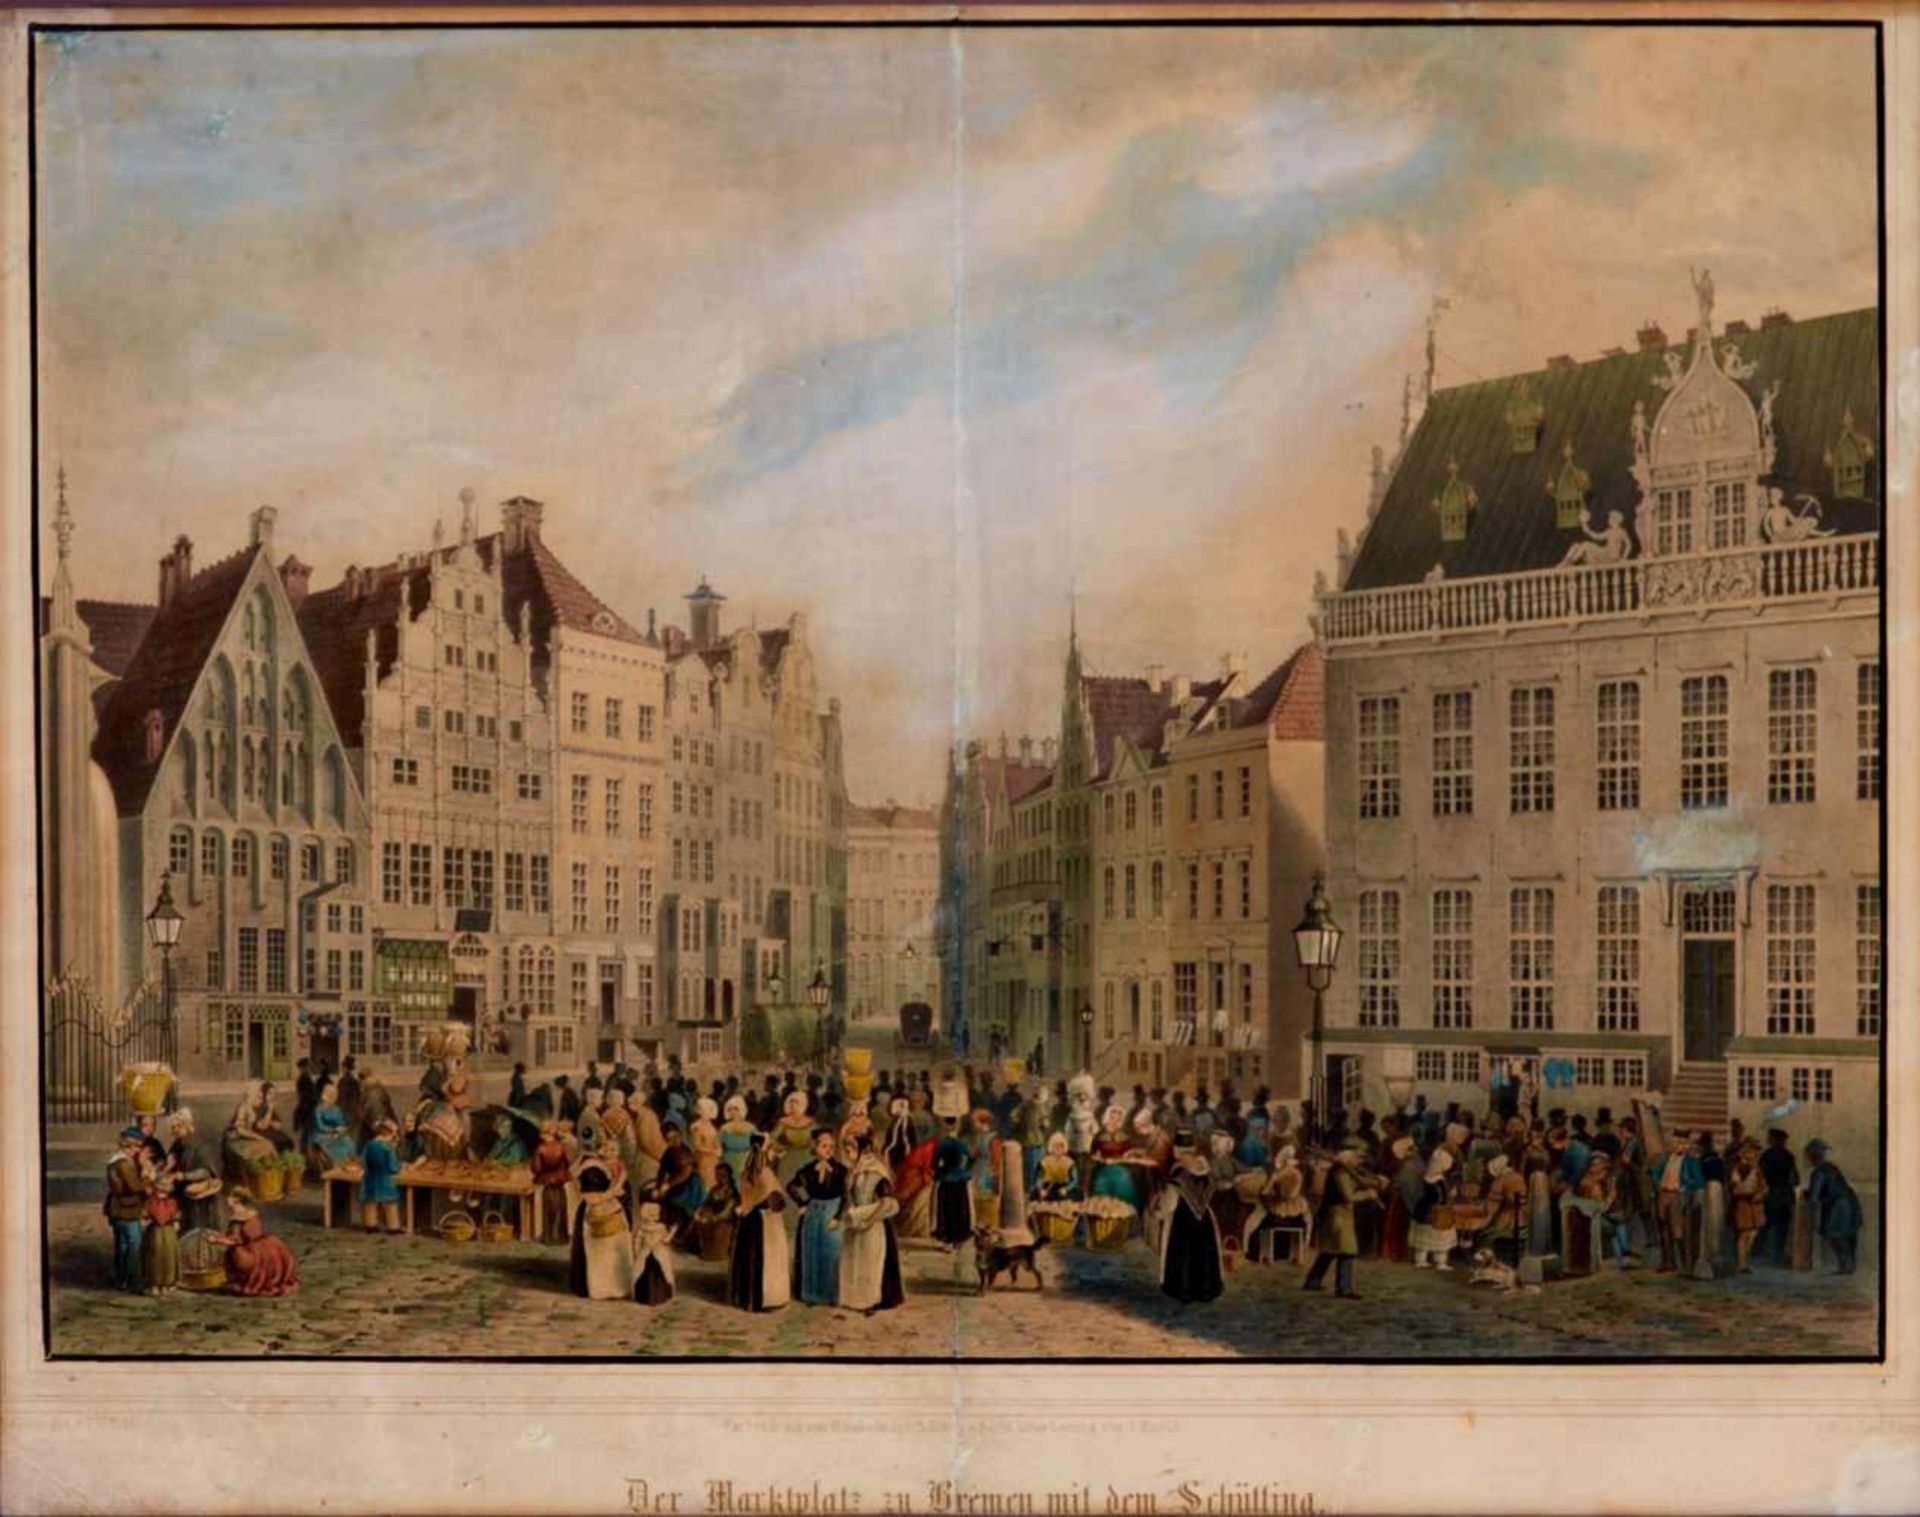 Bremen -"Der Marktplatz zu Bremen mit dem Schütting". Farblithographie von C. Köpper nach F. W.